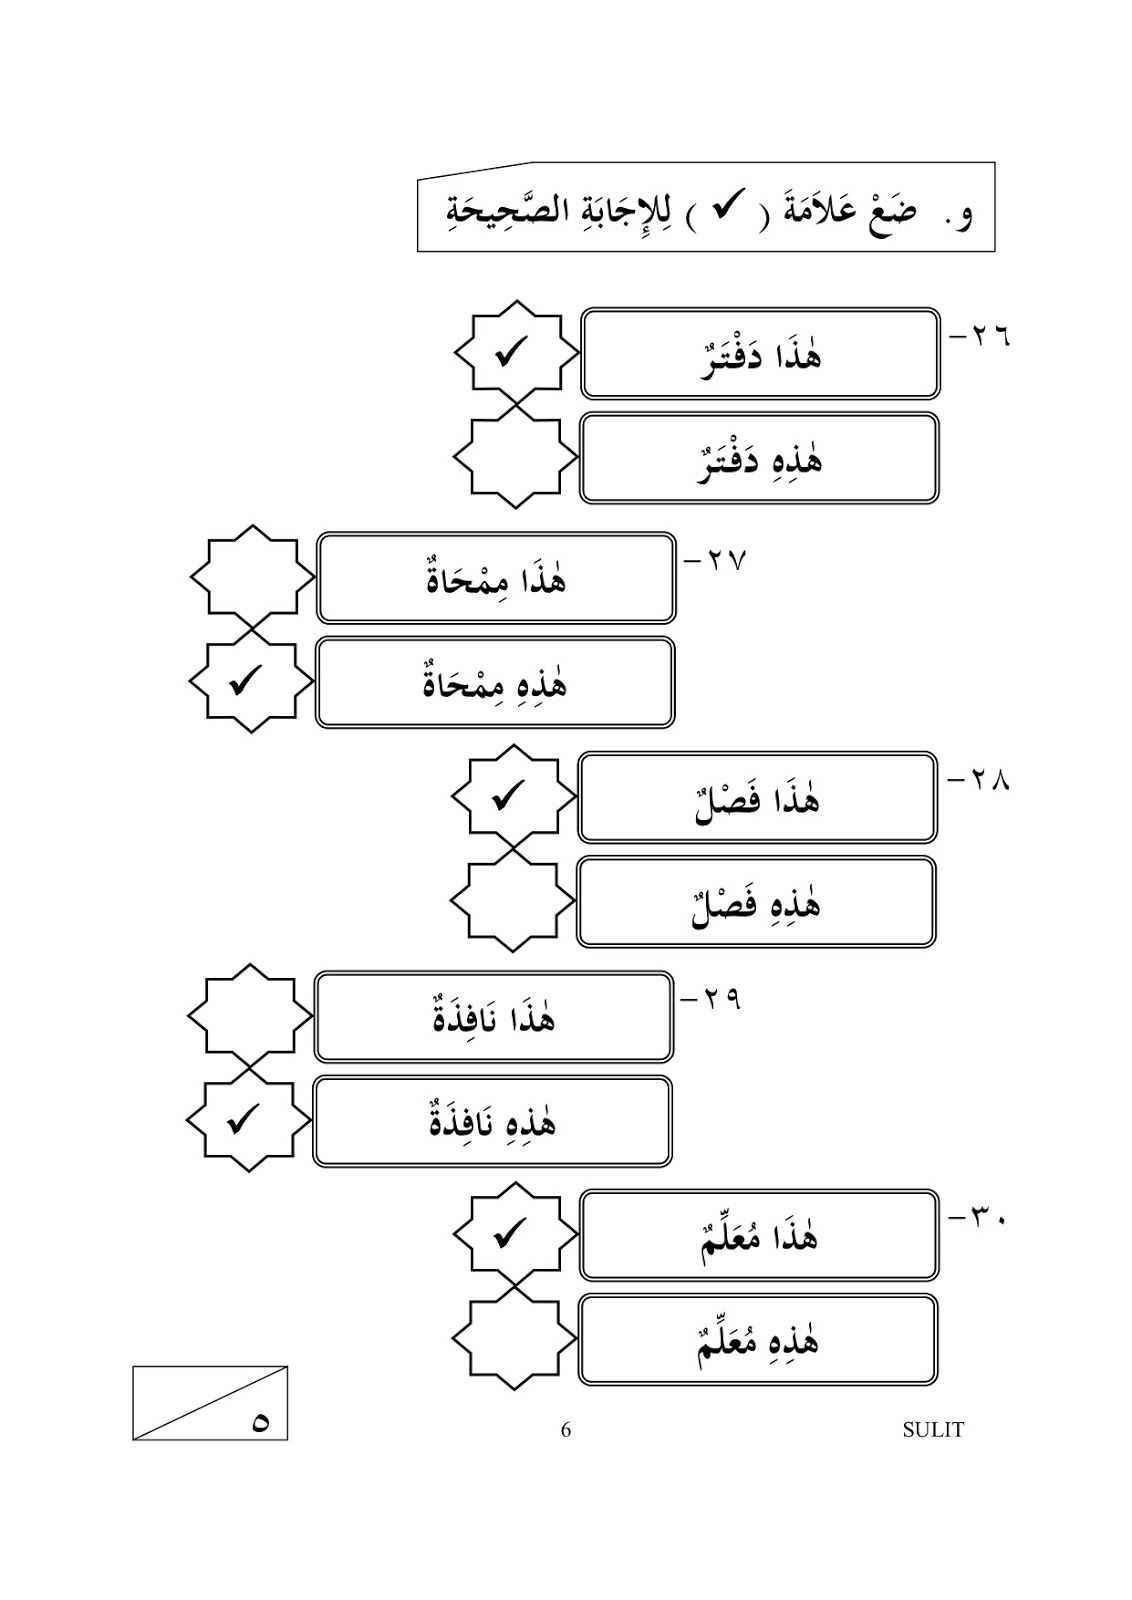 rahmah skema soalan bahasa arab tahun 1